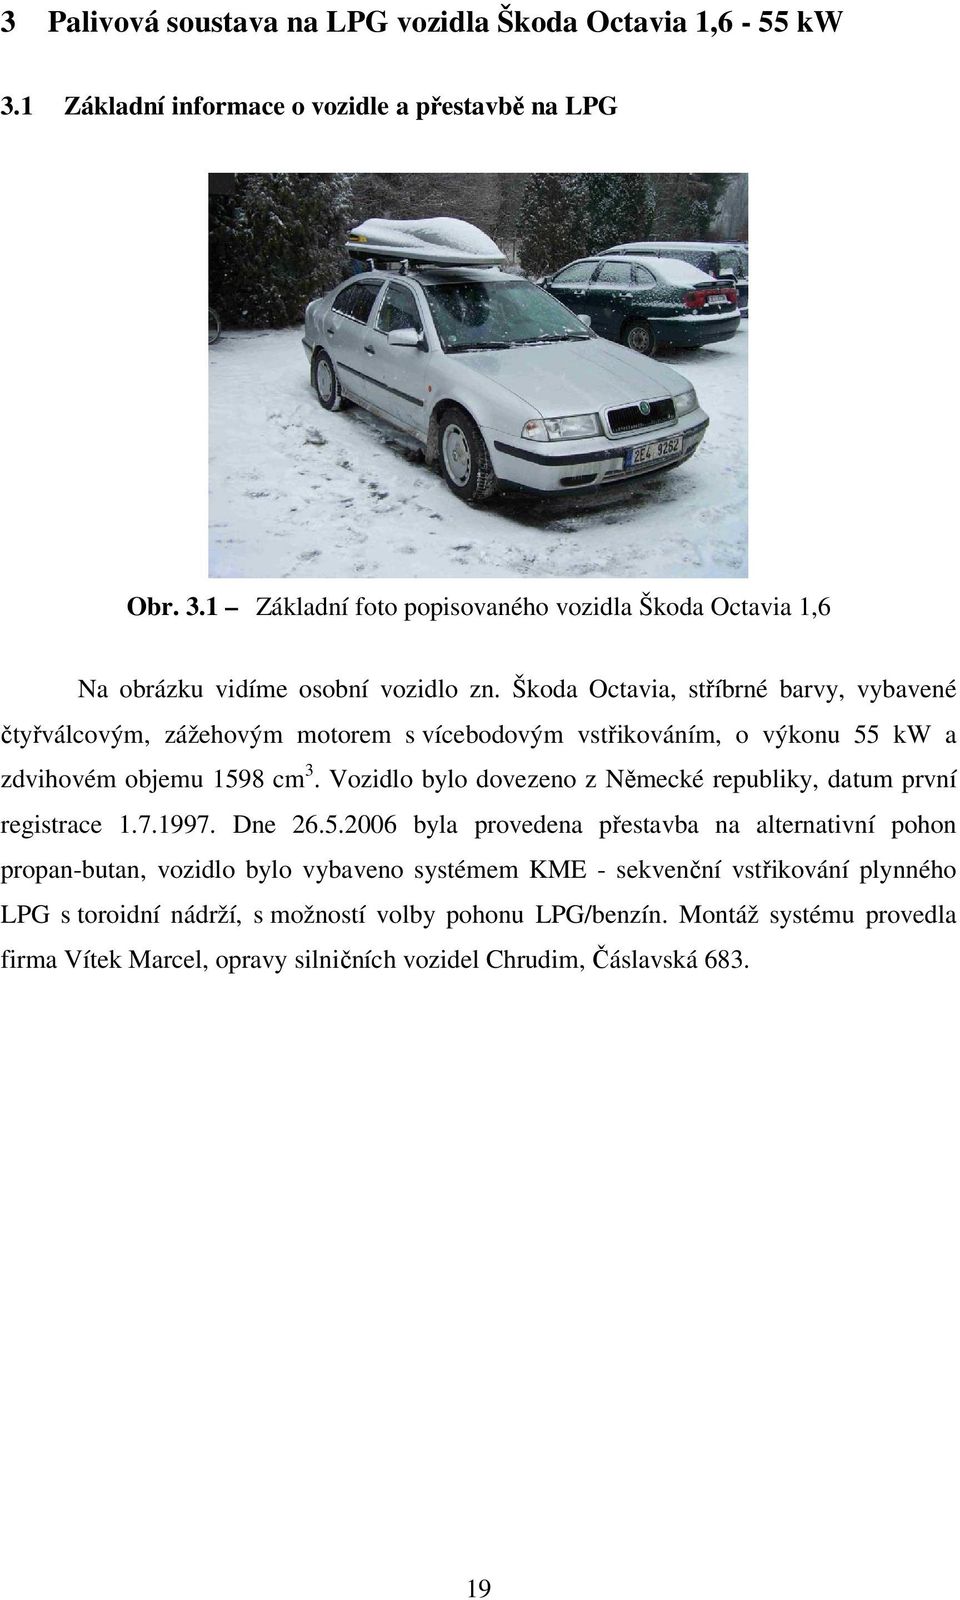 Vozidlo bylo dovezeno z Německé republiky, datum první registrace 1.7.1997. Dne 26.5.